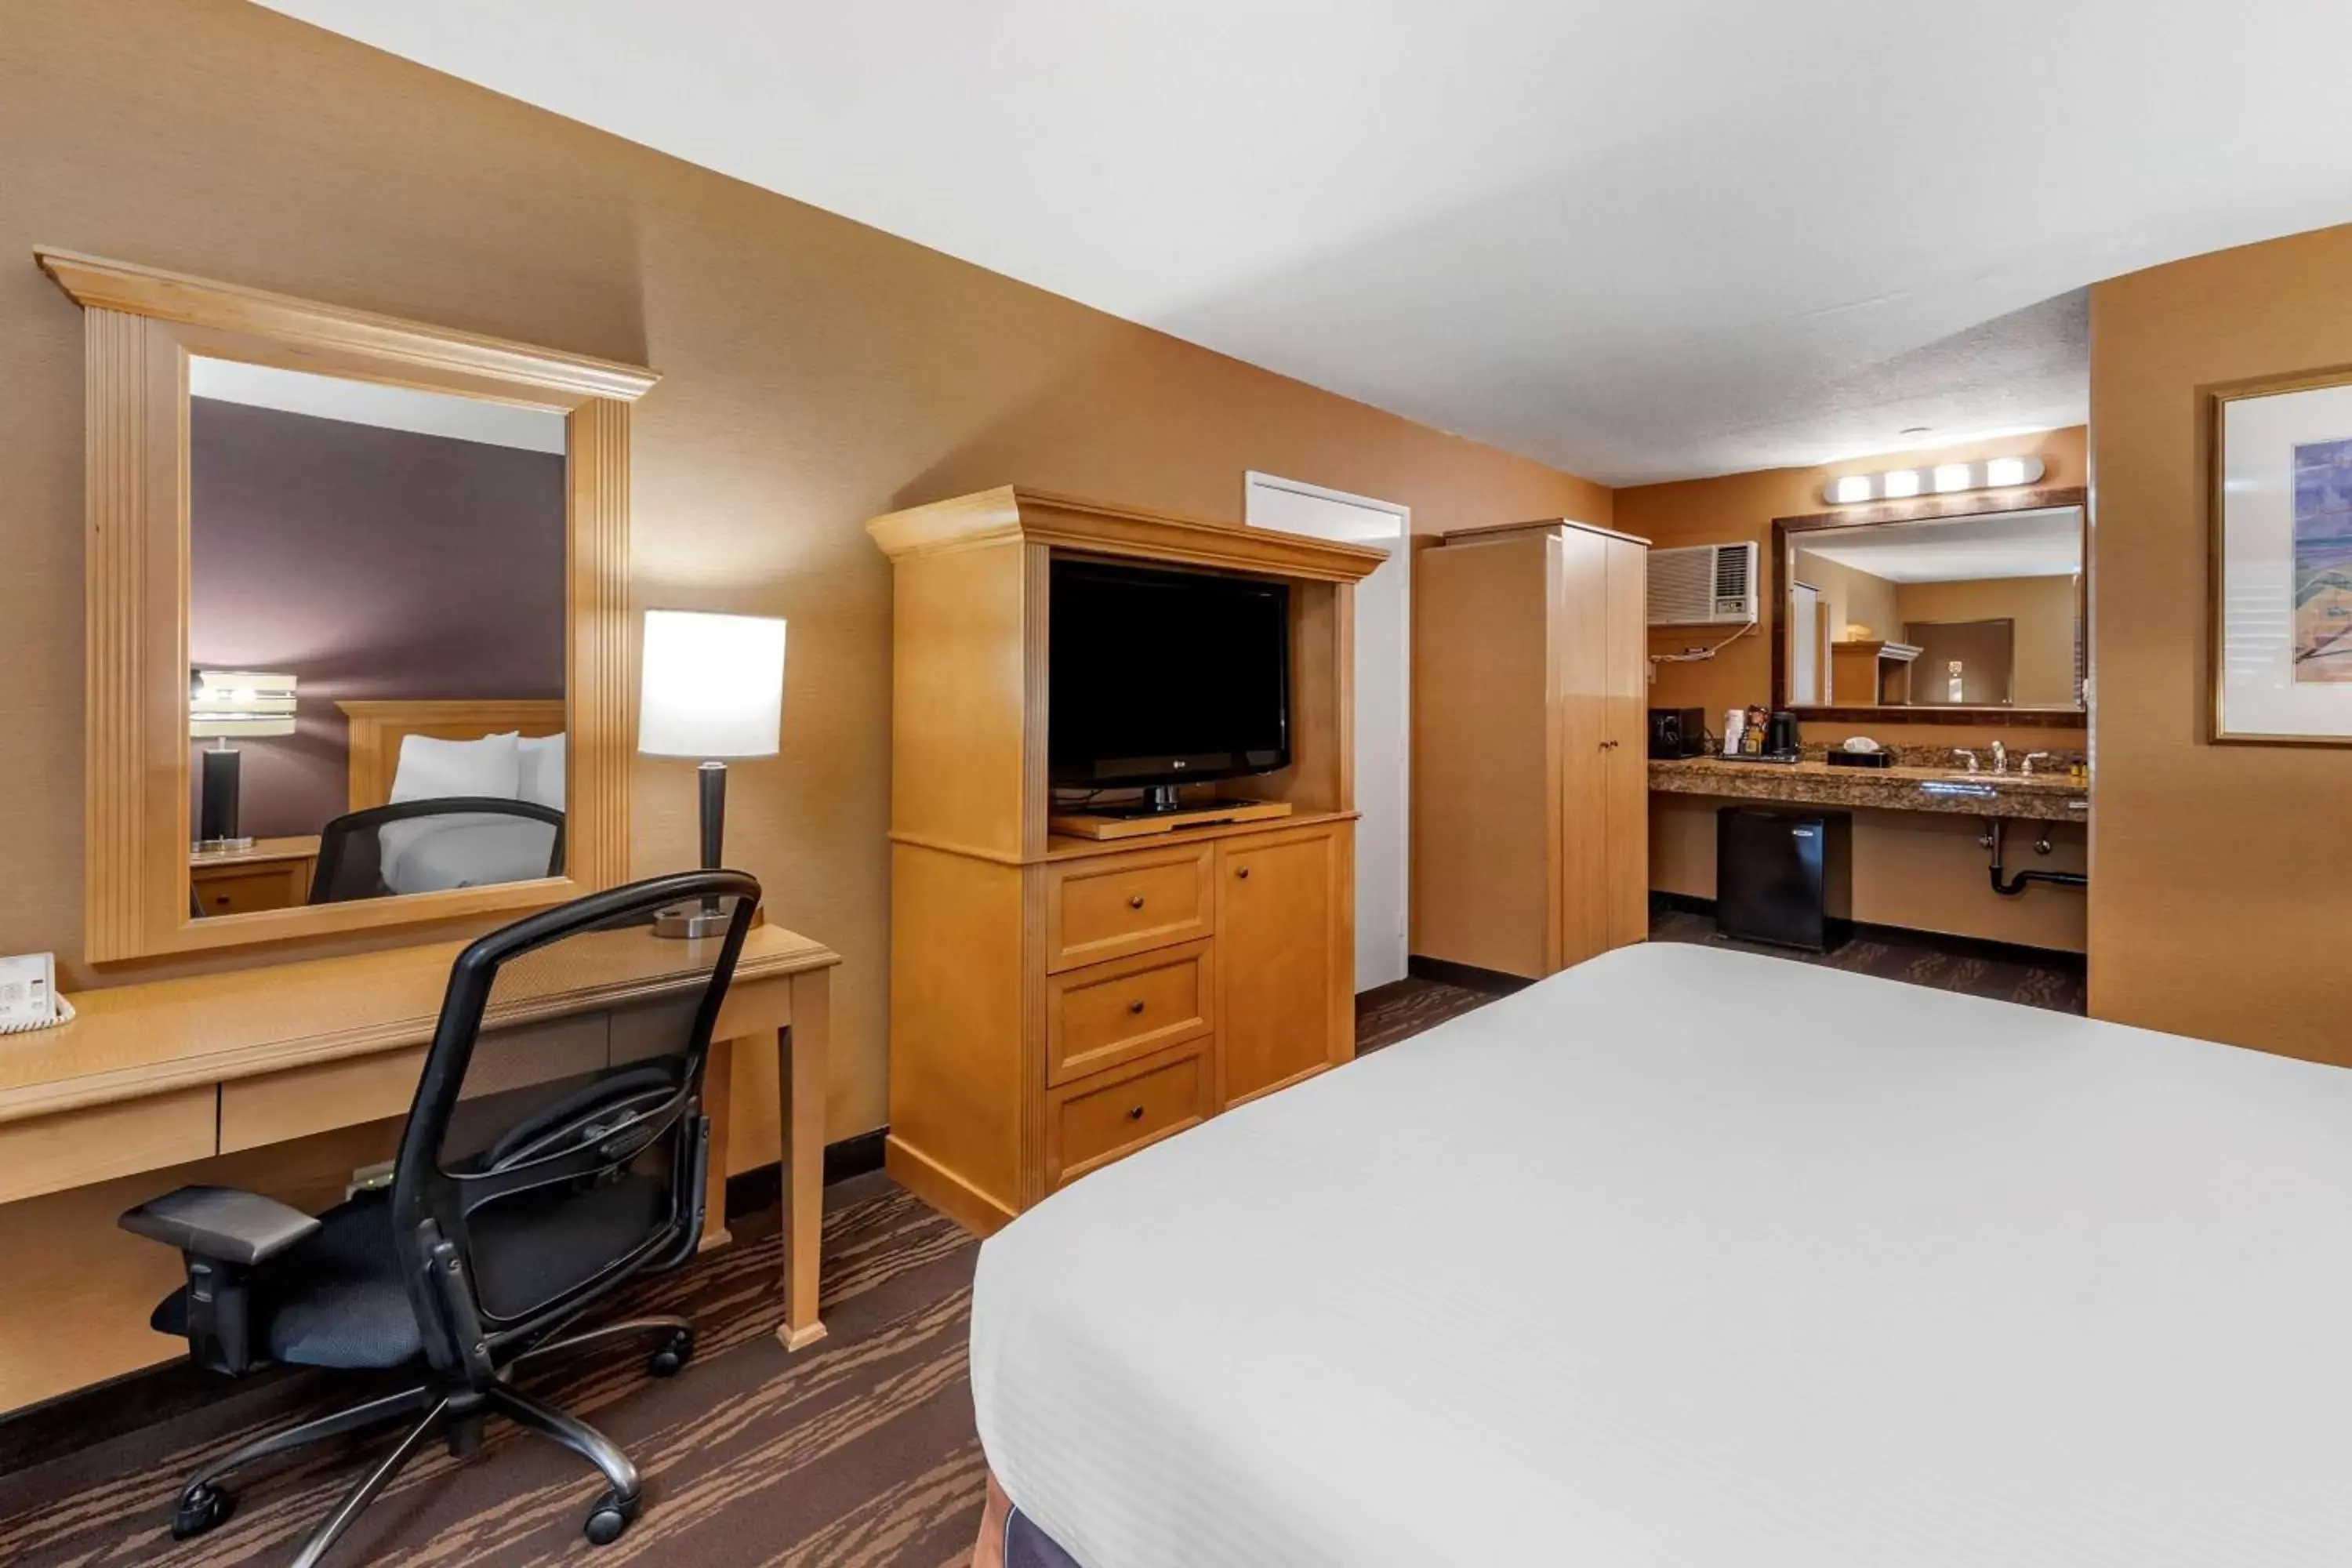 Bedroom, TV/Entertainment Center in Best Western Plus Stovall's Inn